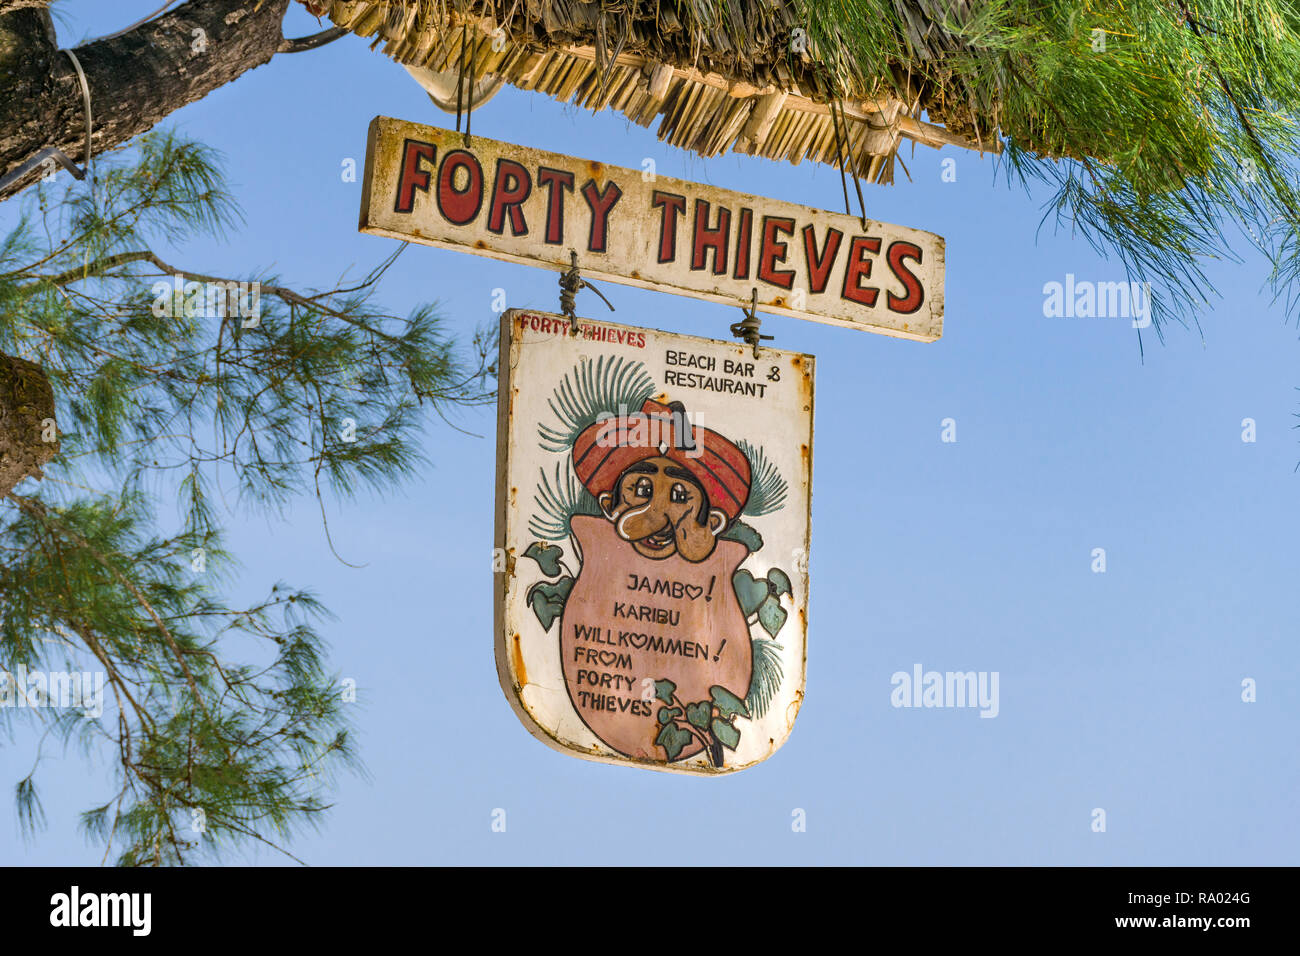 Un segno per il Forty Thieves beach bar e ristorante è appeso a un albero in ombra su un soleggiato blue sky giorno, Diani, Kenya Foto Stock